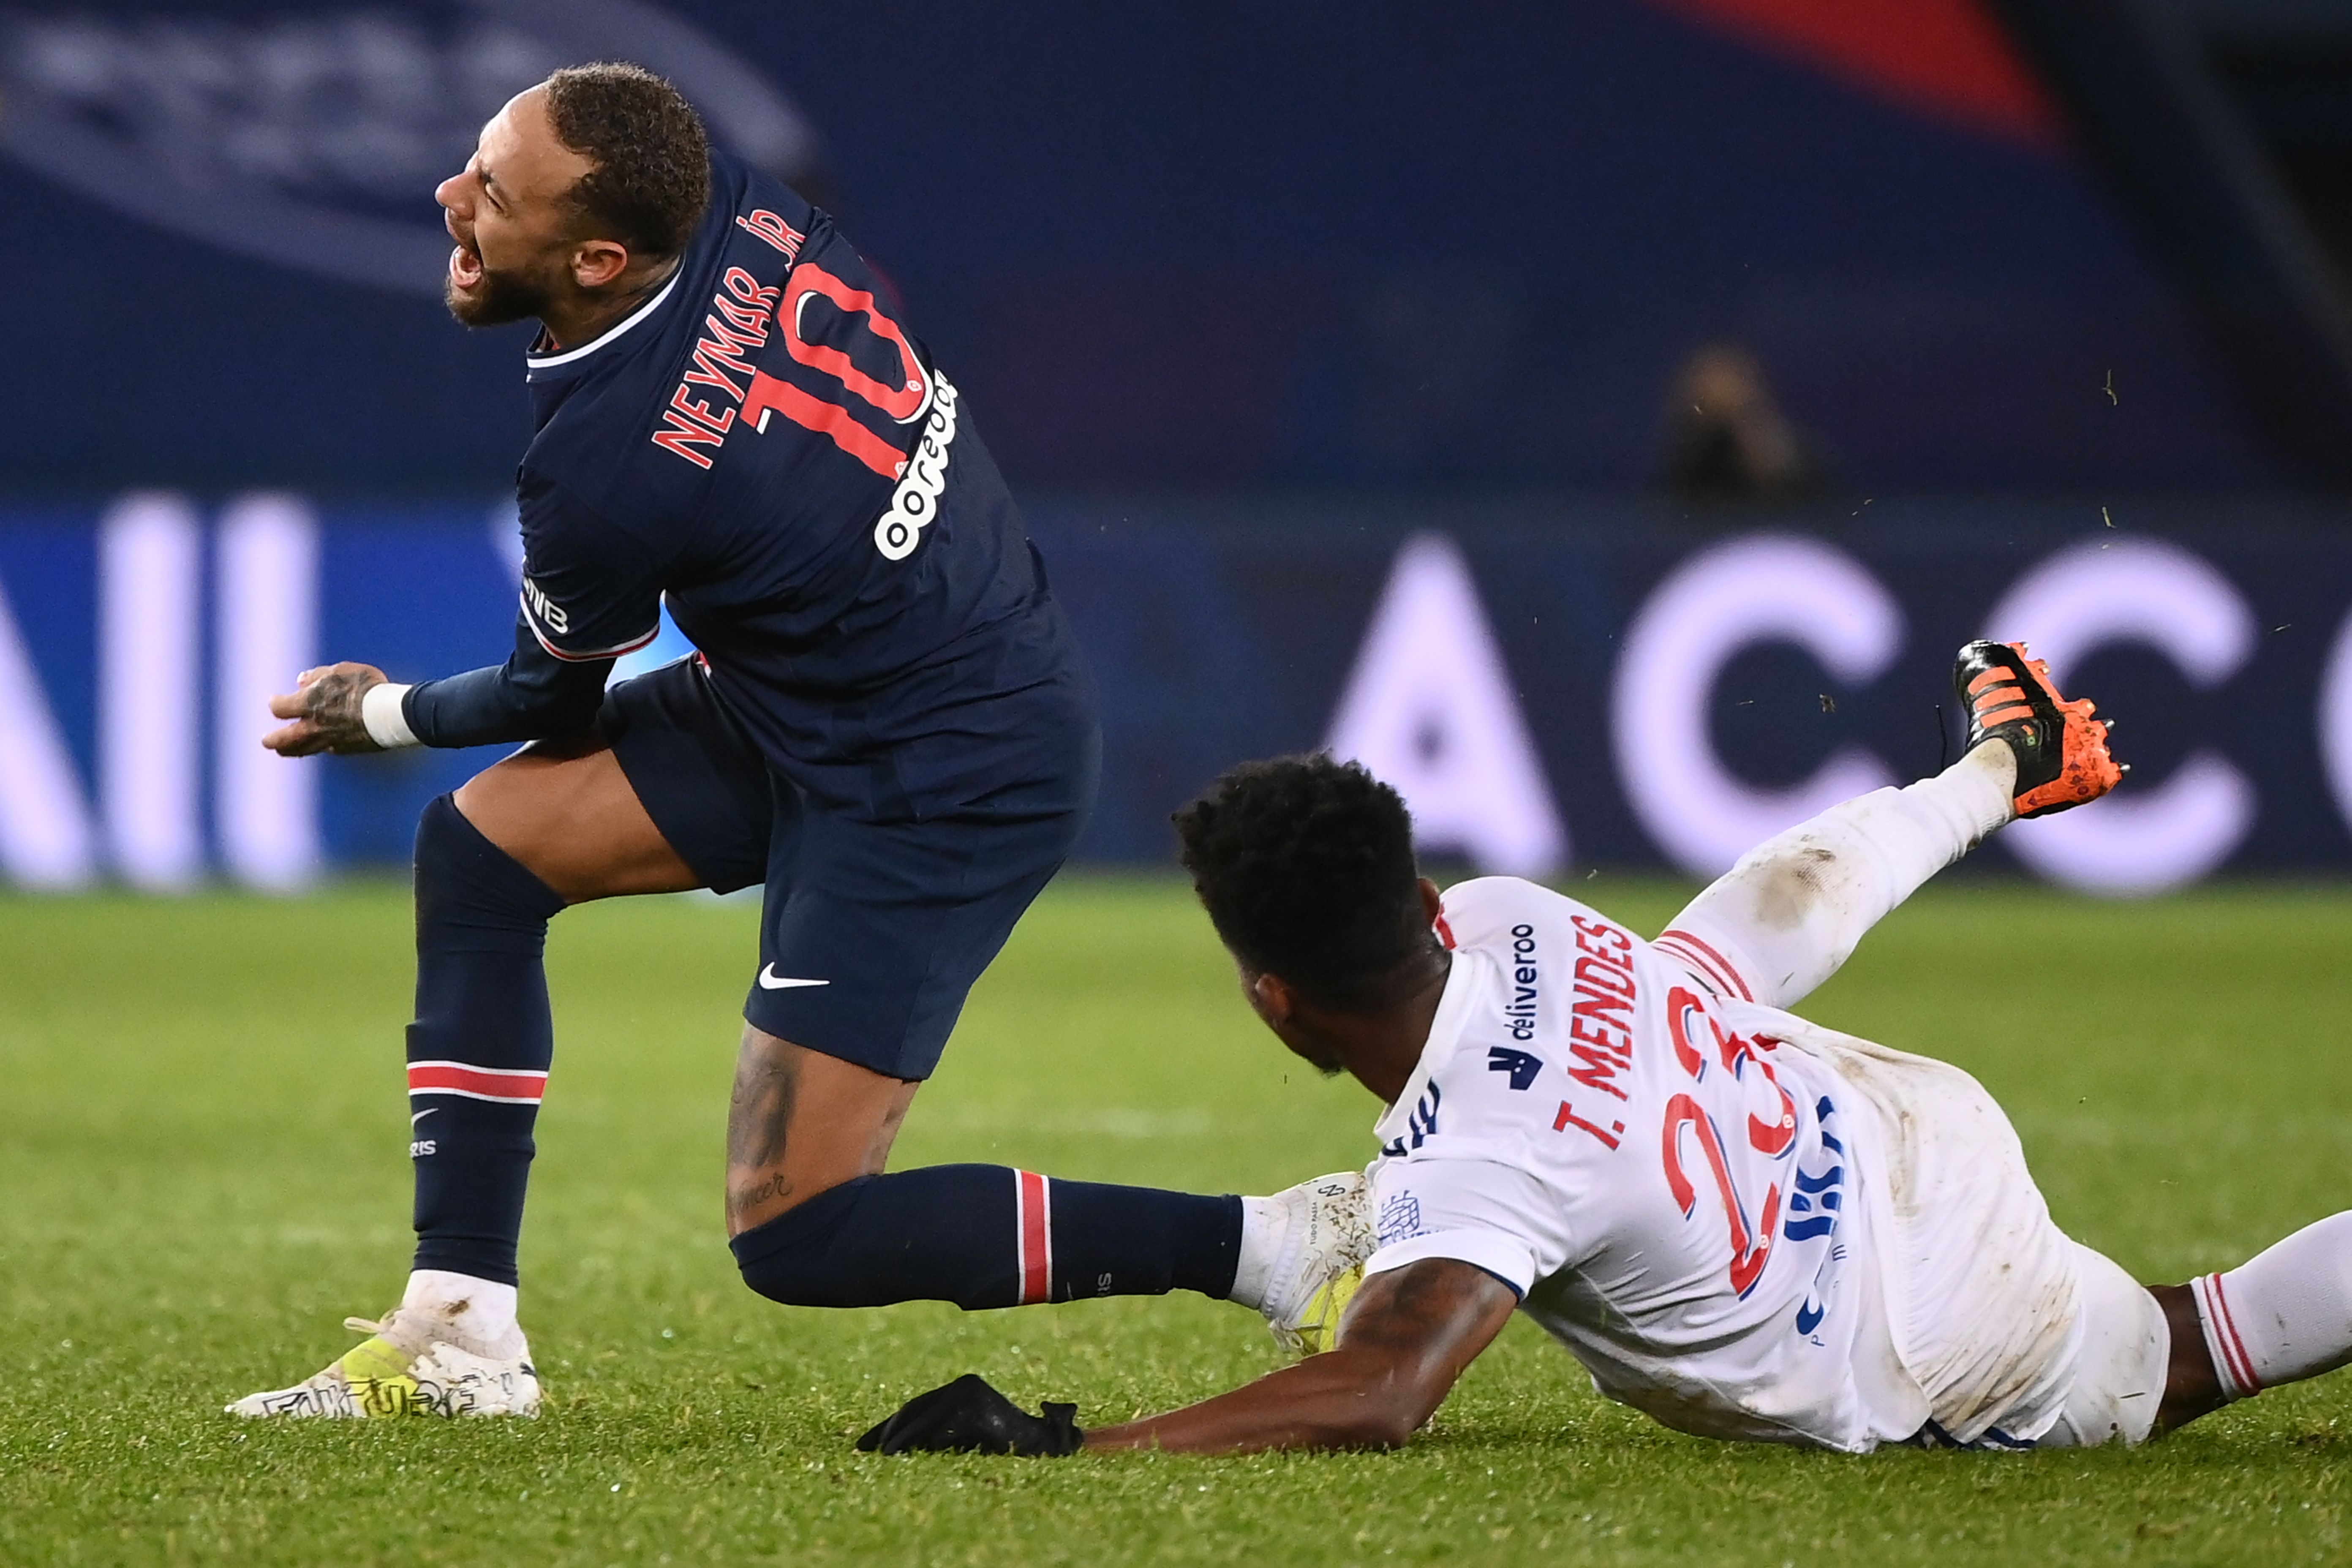 El regreso de Neymar Jr. a las canchas está contemplado para enero, esto luego de una lesión en el tobillo que lo dejó fuera. (Foto Prensa Libre: AFP)